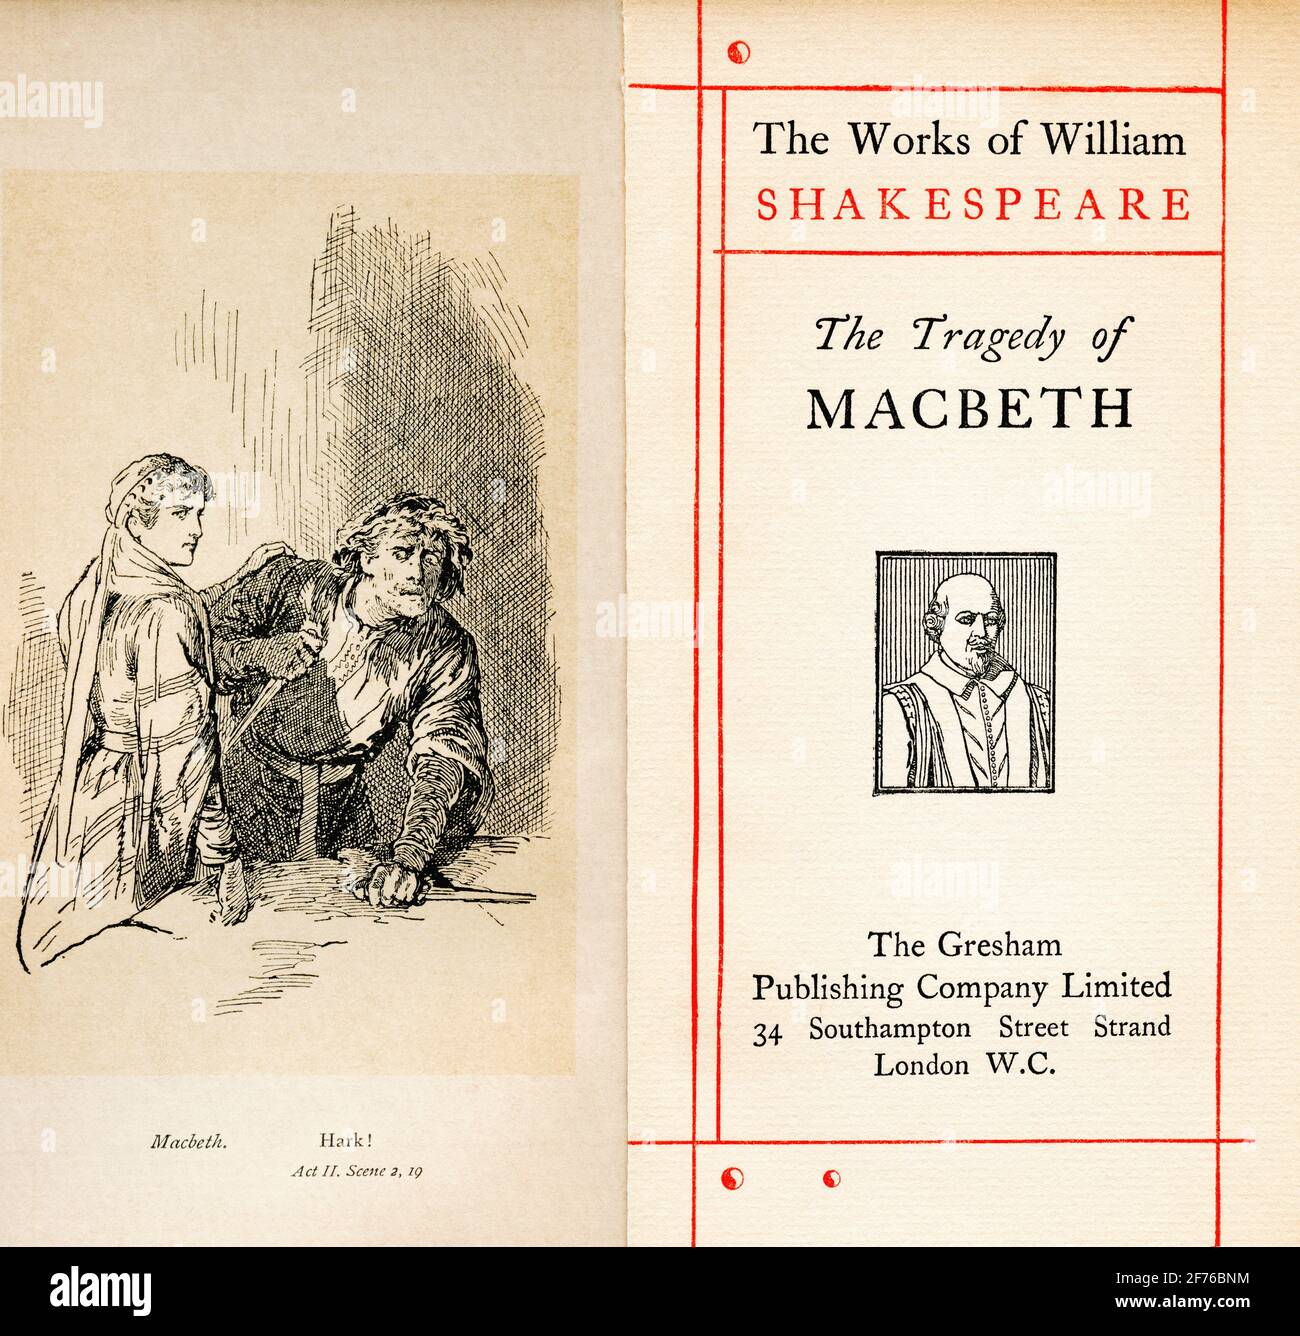 Frontispiz und Titelseite aus dem Shakespeare-Stück Macbeth. Akt II, Szene 2. Macbeth, „Hark! '. Aus den Werken von William Shakespeare, erschienen um 1900 Stockfoto